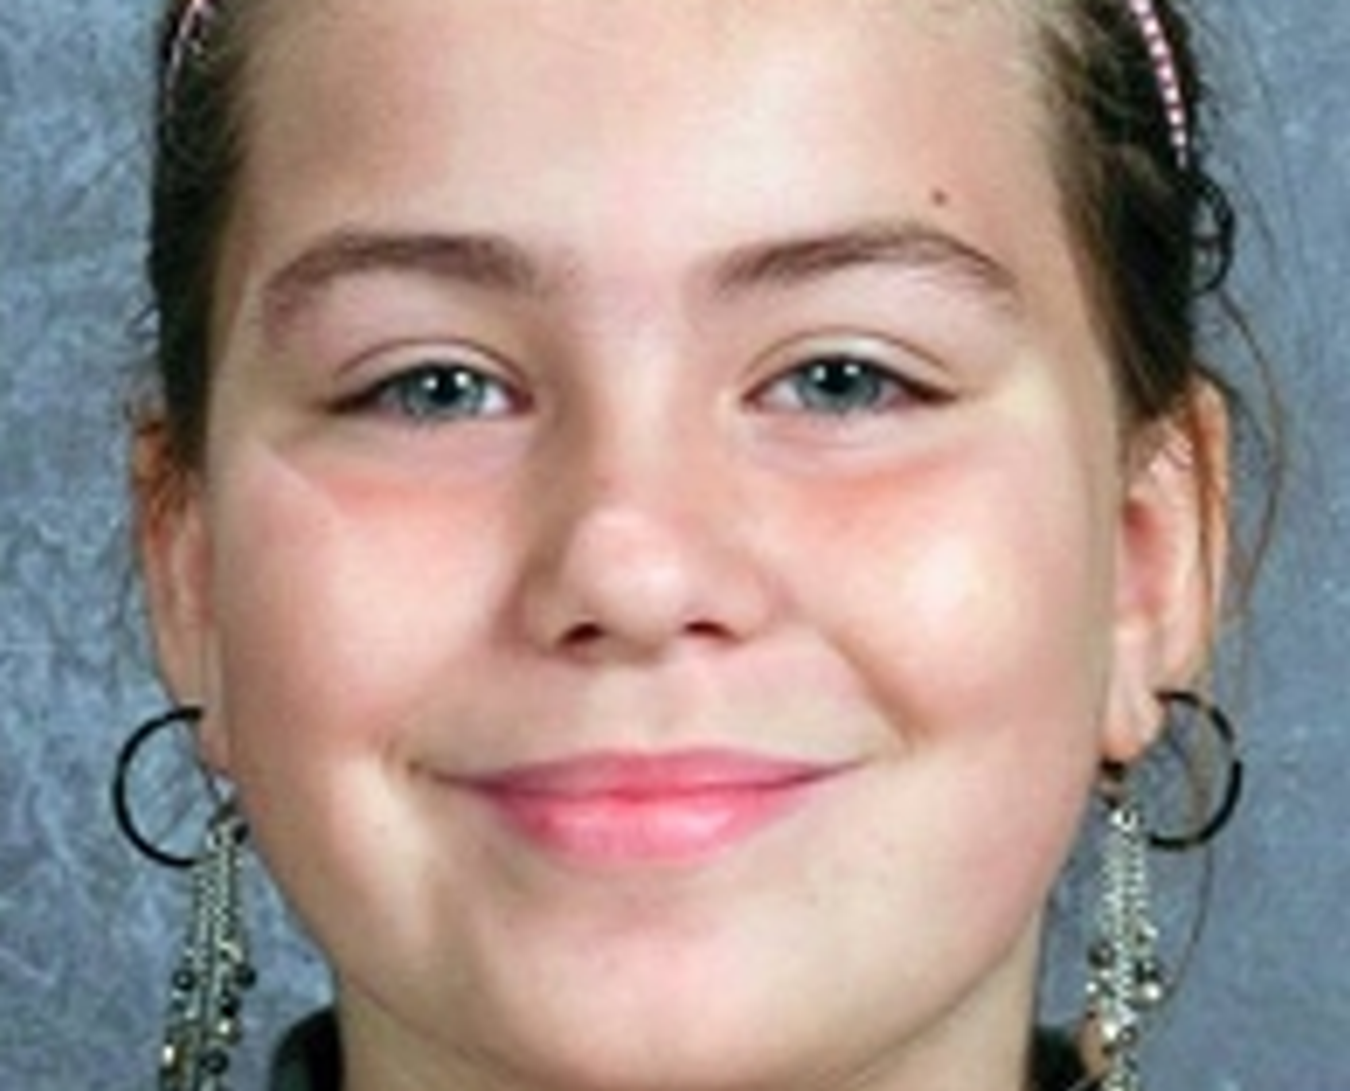 Lyric Cook,10, found murdered with her cousin Elizabeth Collins, 8.